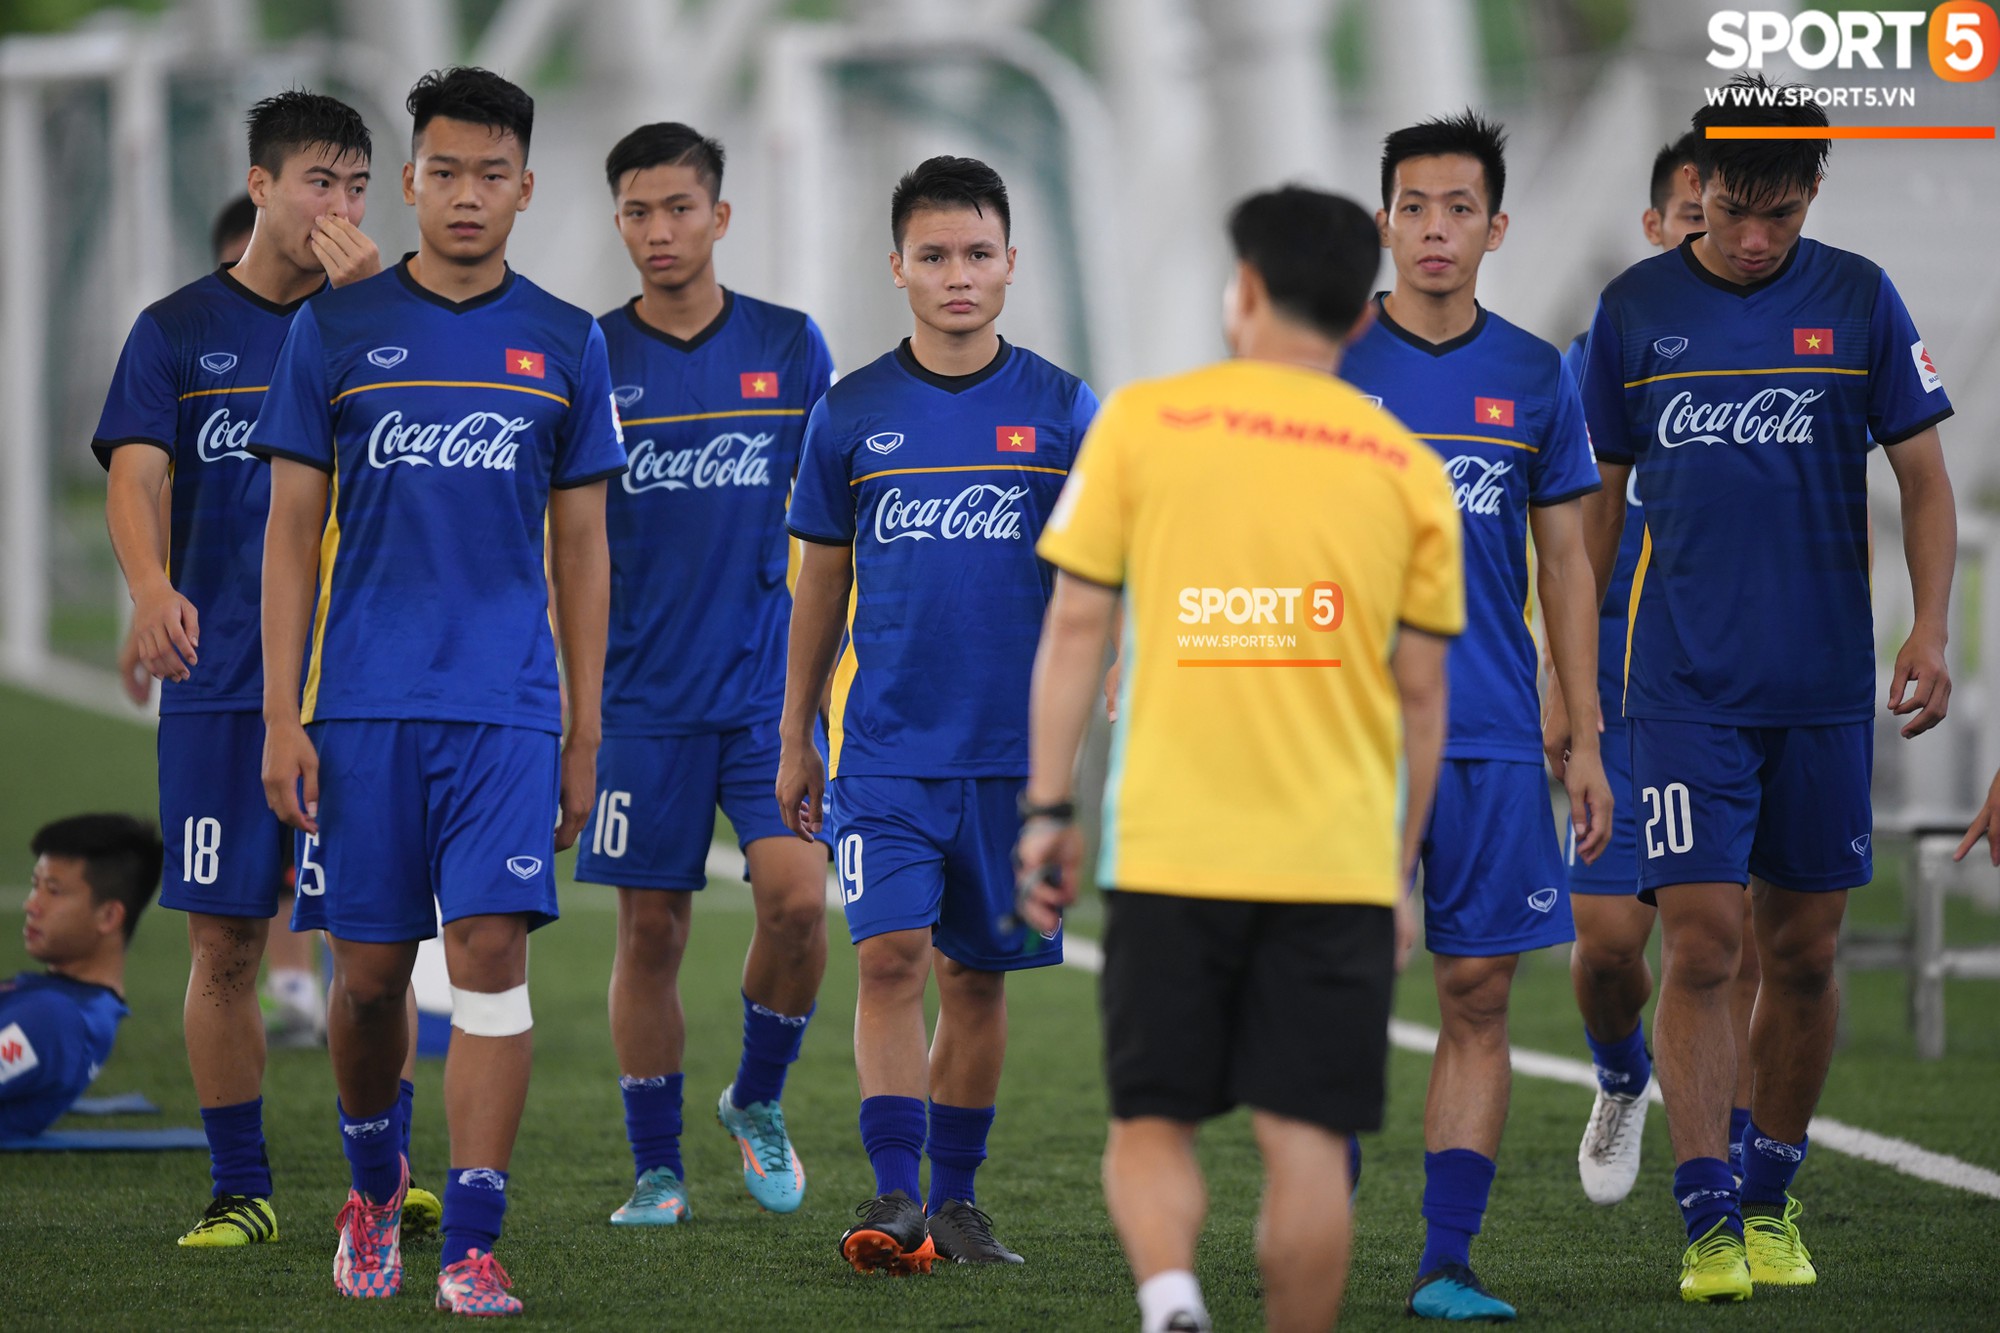 Việt Nam chưa có bản quyền ASIAD 2018, NHM có khả năng không được xem đội tuyển U23 - Ảnh 1.